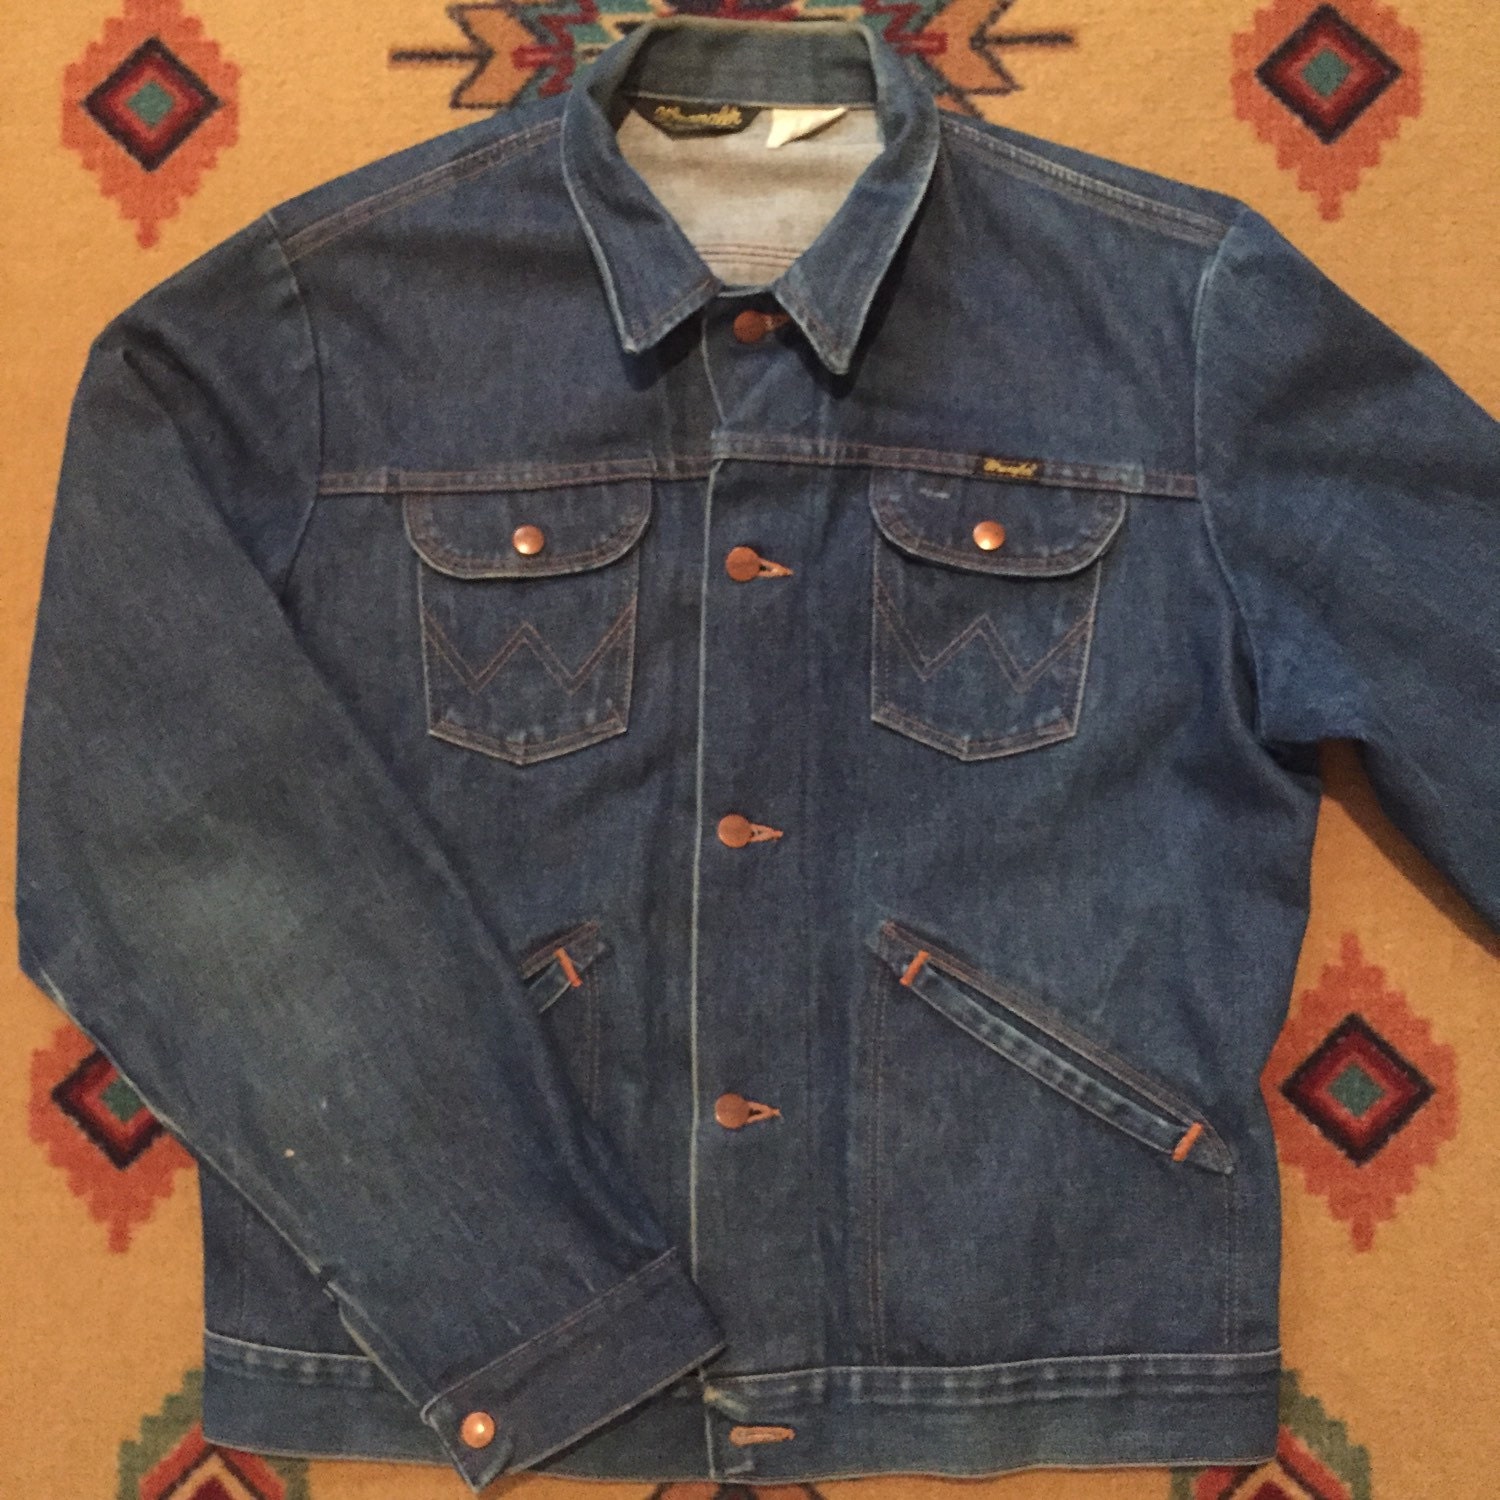 Vintage 1970s Wrangler Denim Jacket Size 44L Made In USA